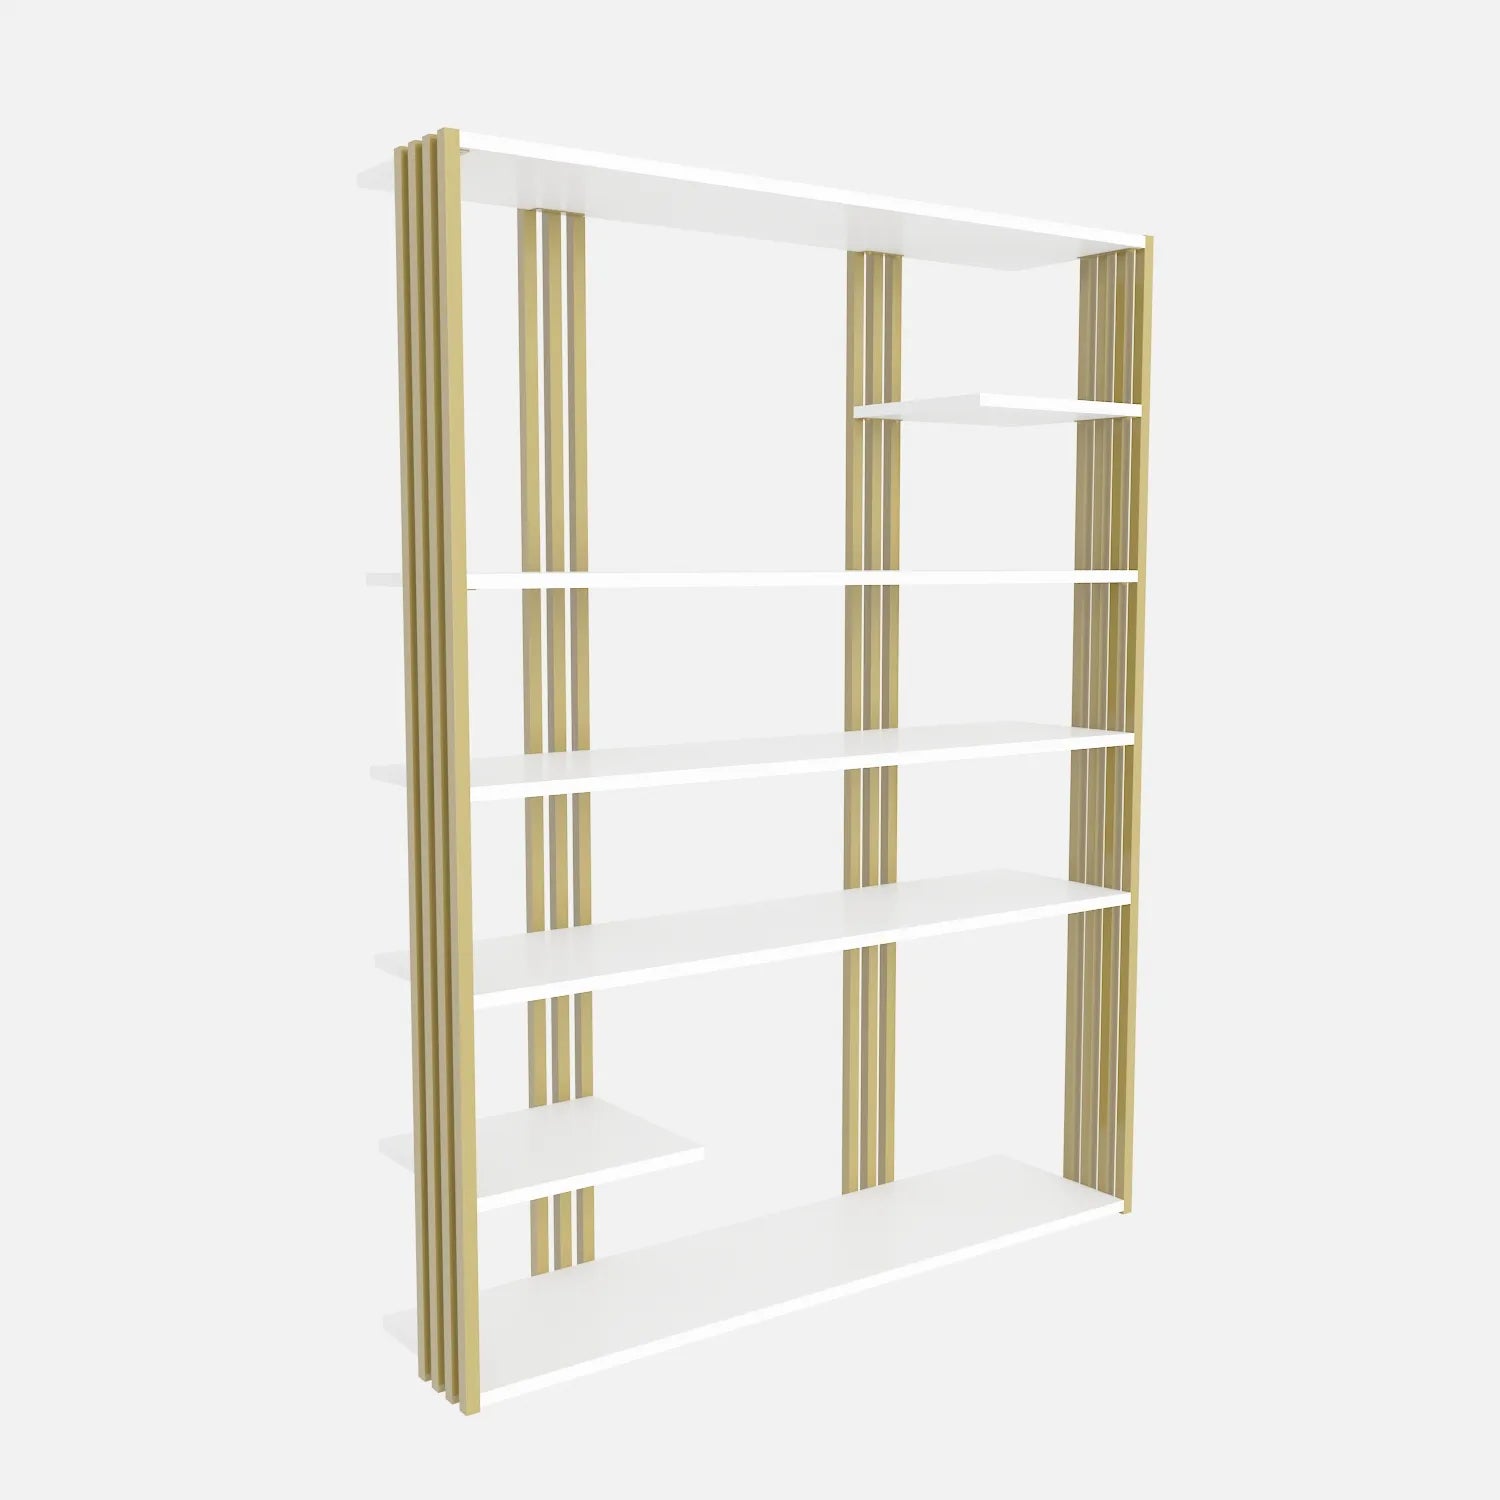 Jeni 63" Tall Metal Wood Bookcase | Bookshelf | Display Unit